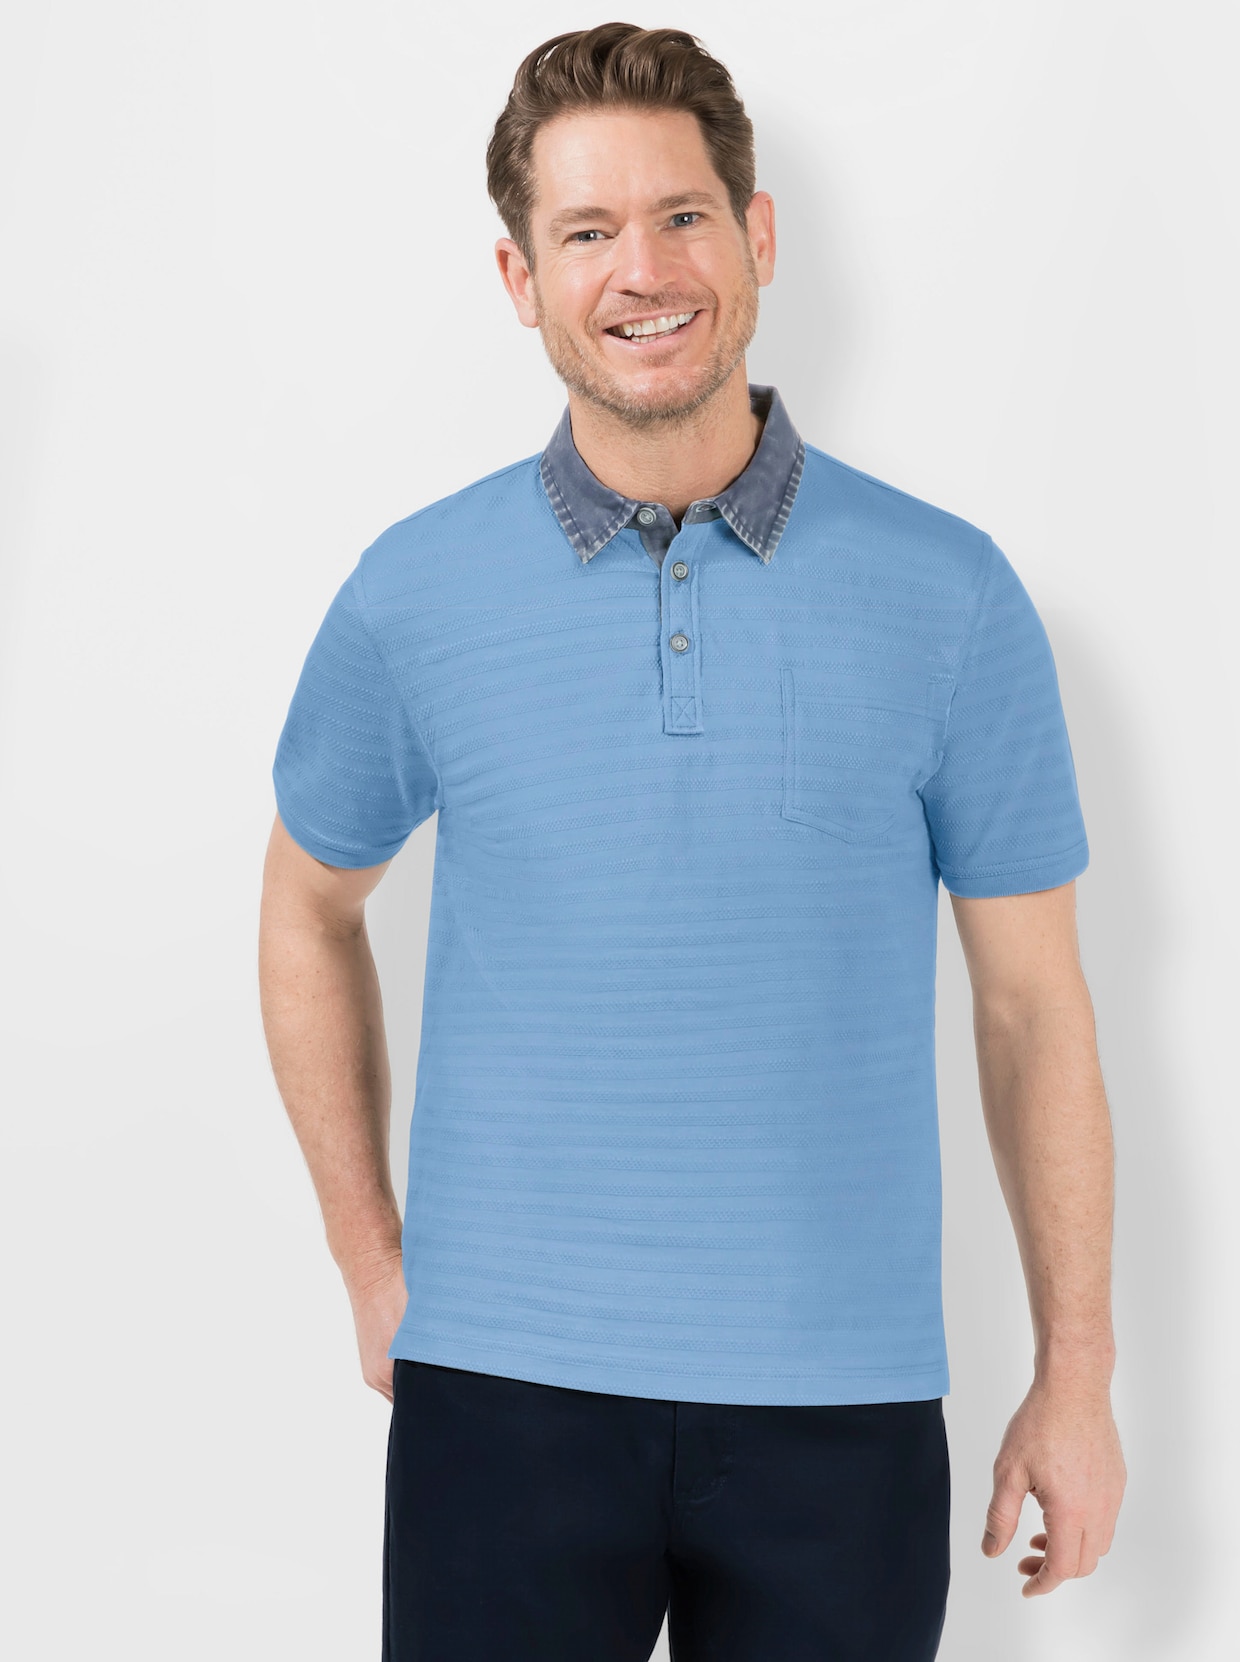 Marco Donati Shirt met korte mouwen - jeansblauw